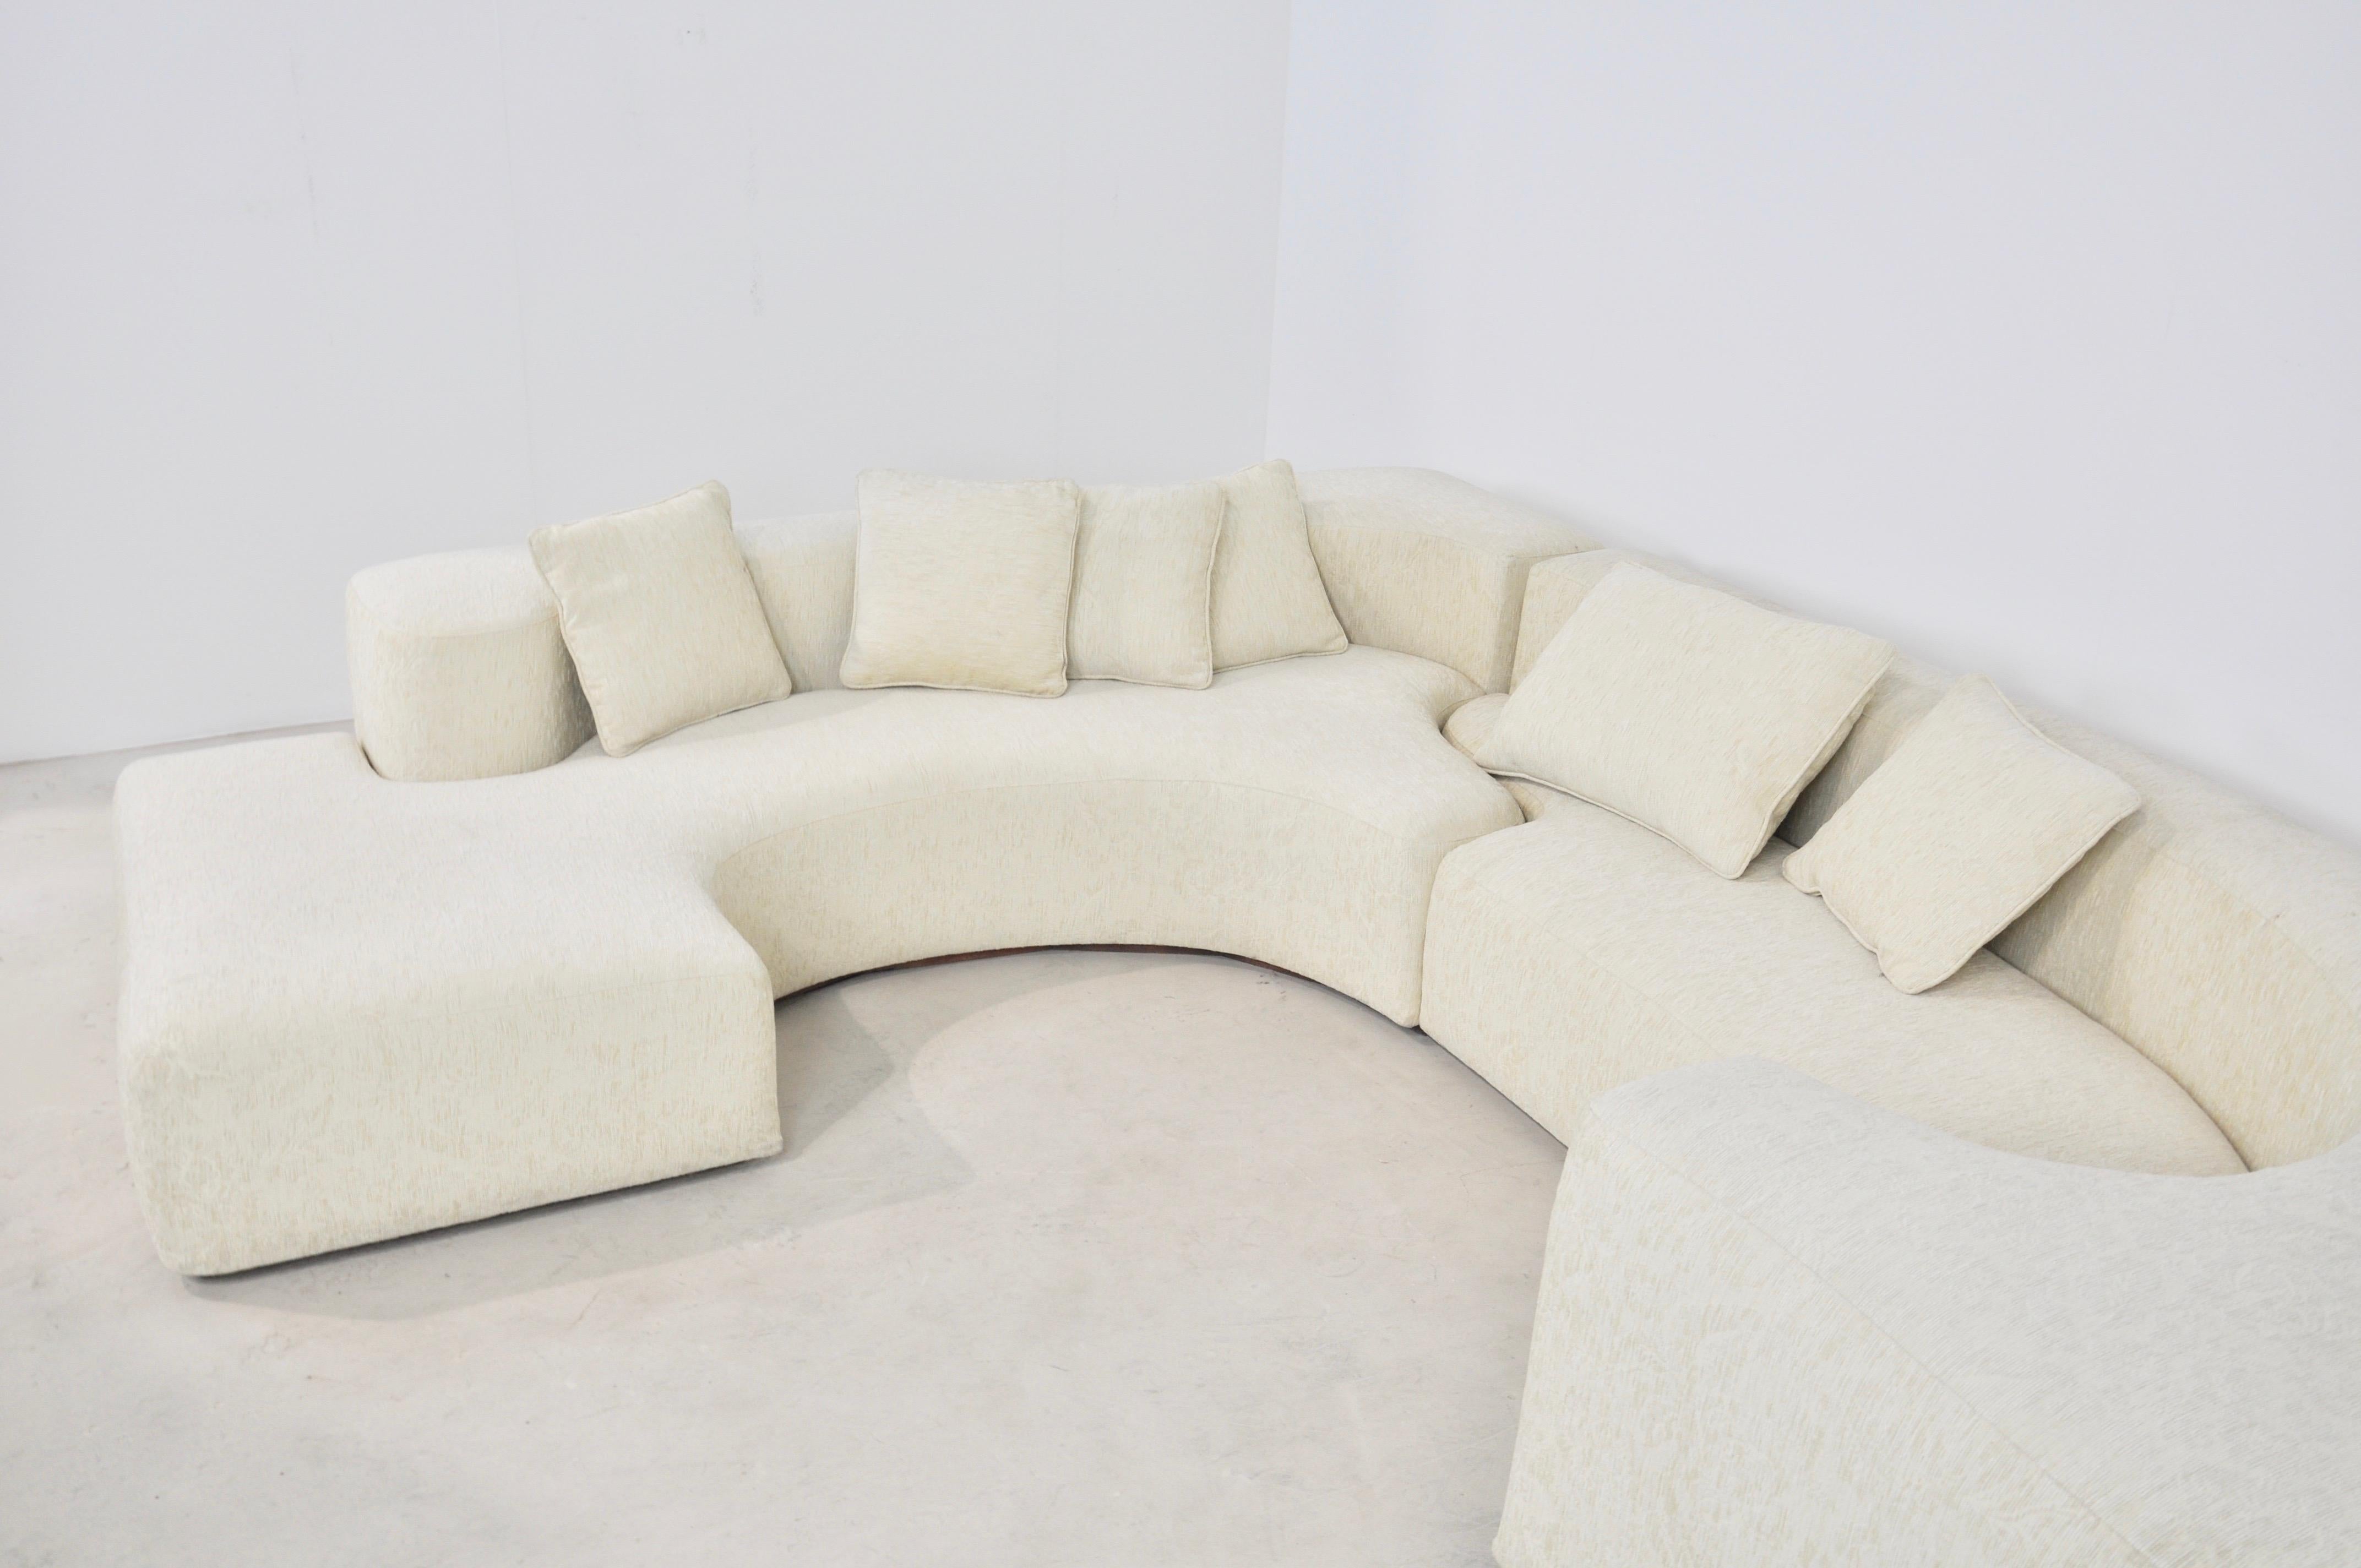 Ennio Chiggio, Environ One Sofa by Nikol International, 1970s 1